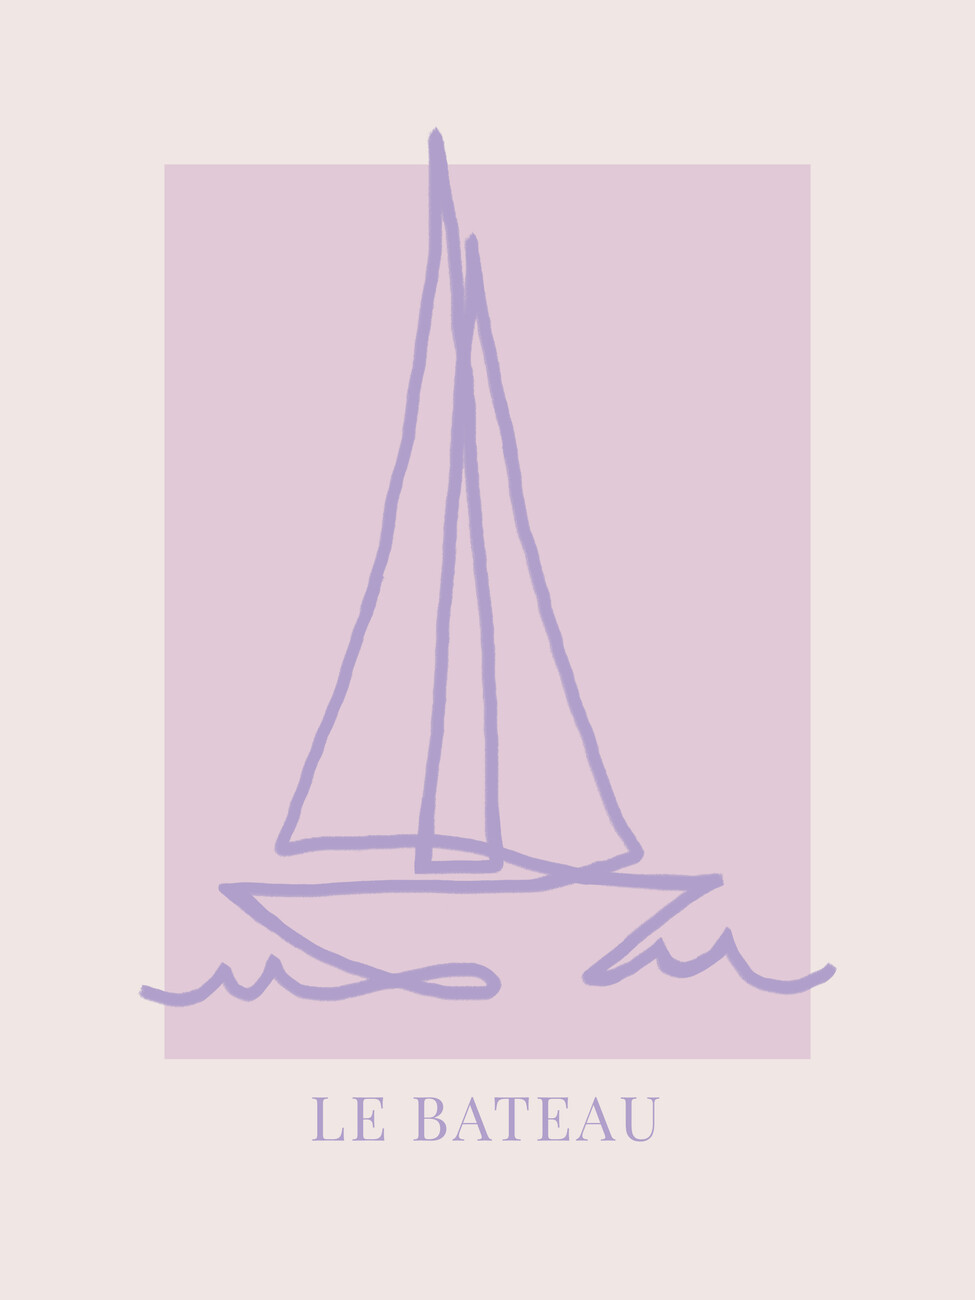 Ilustrace Le Bateau Purple, Rose Caroline Grantz, (30 x 40 cm)